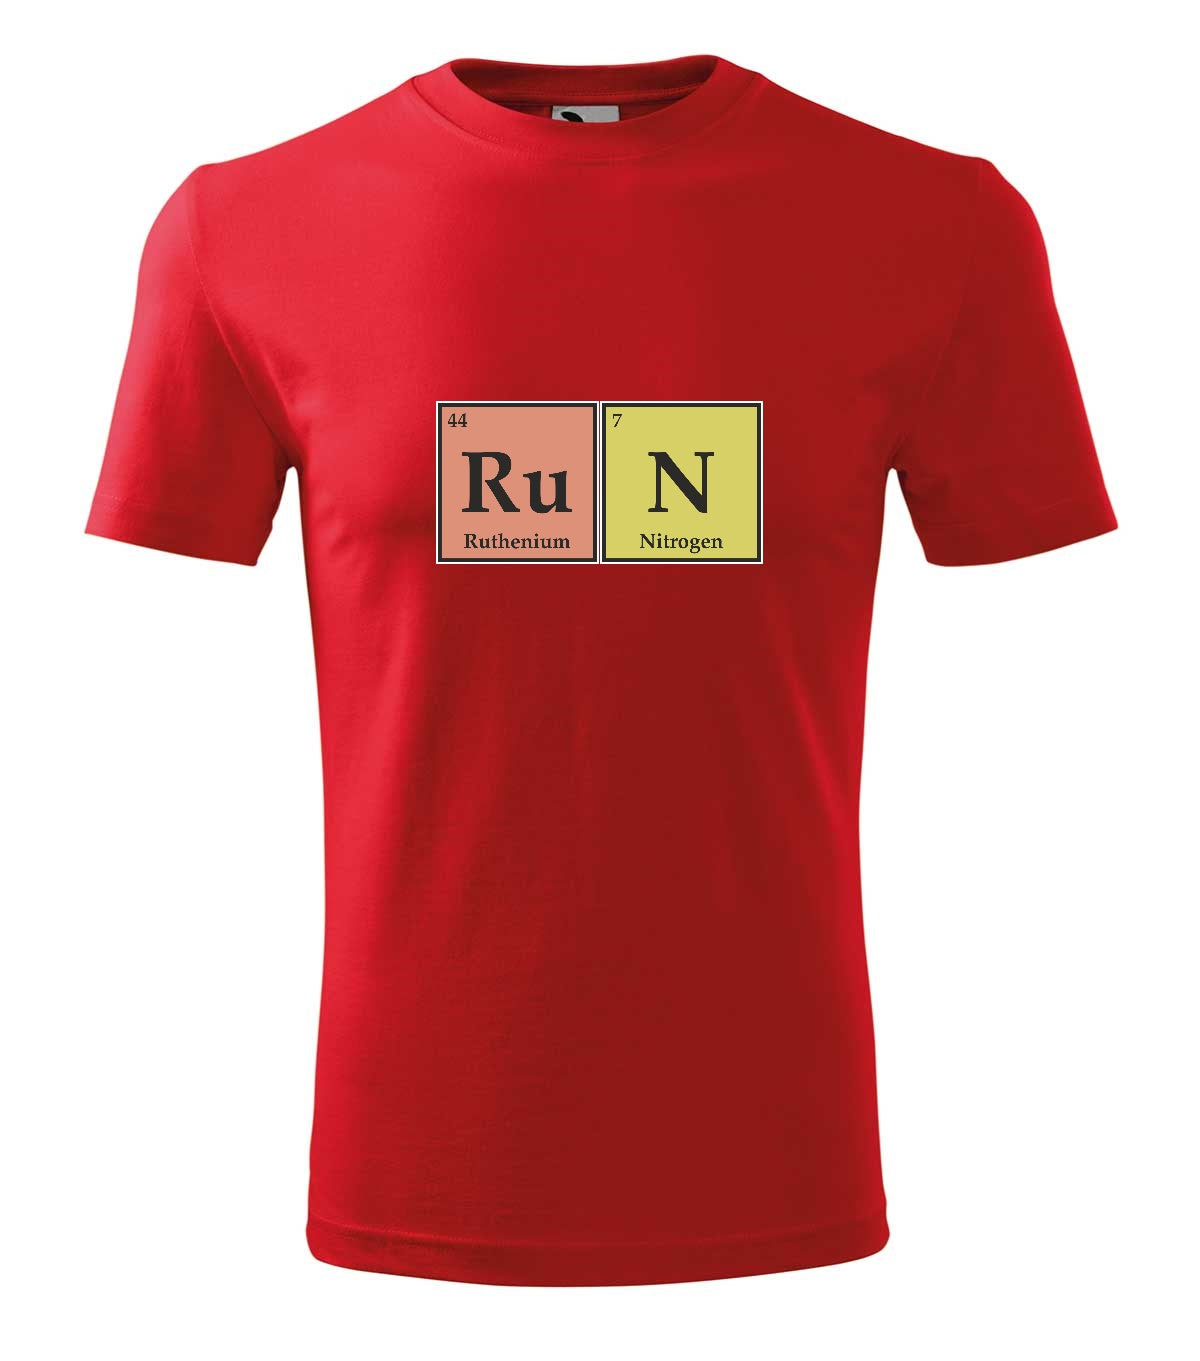 RuN kémia férfi póló